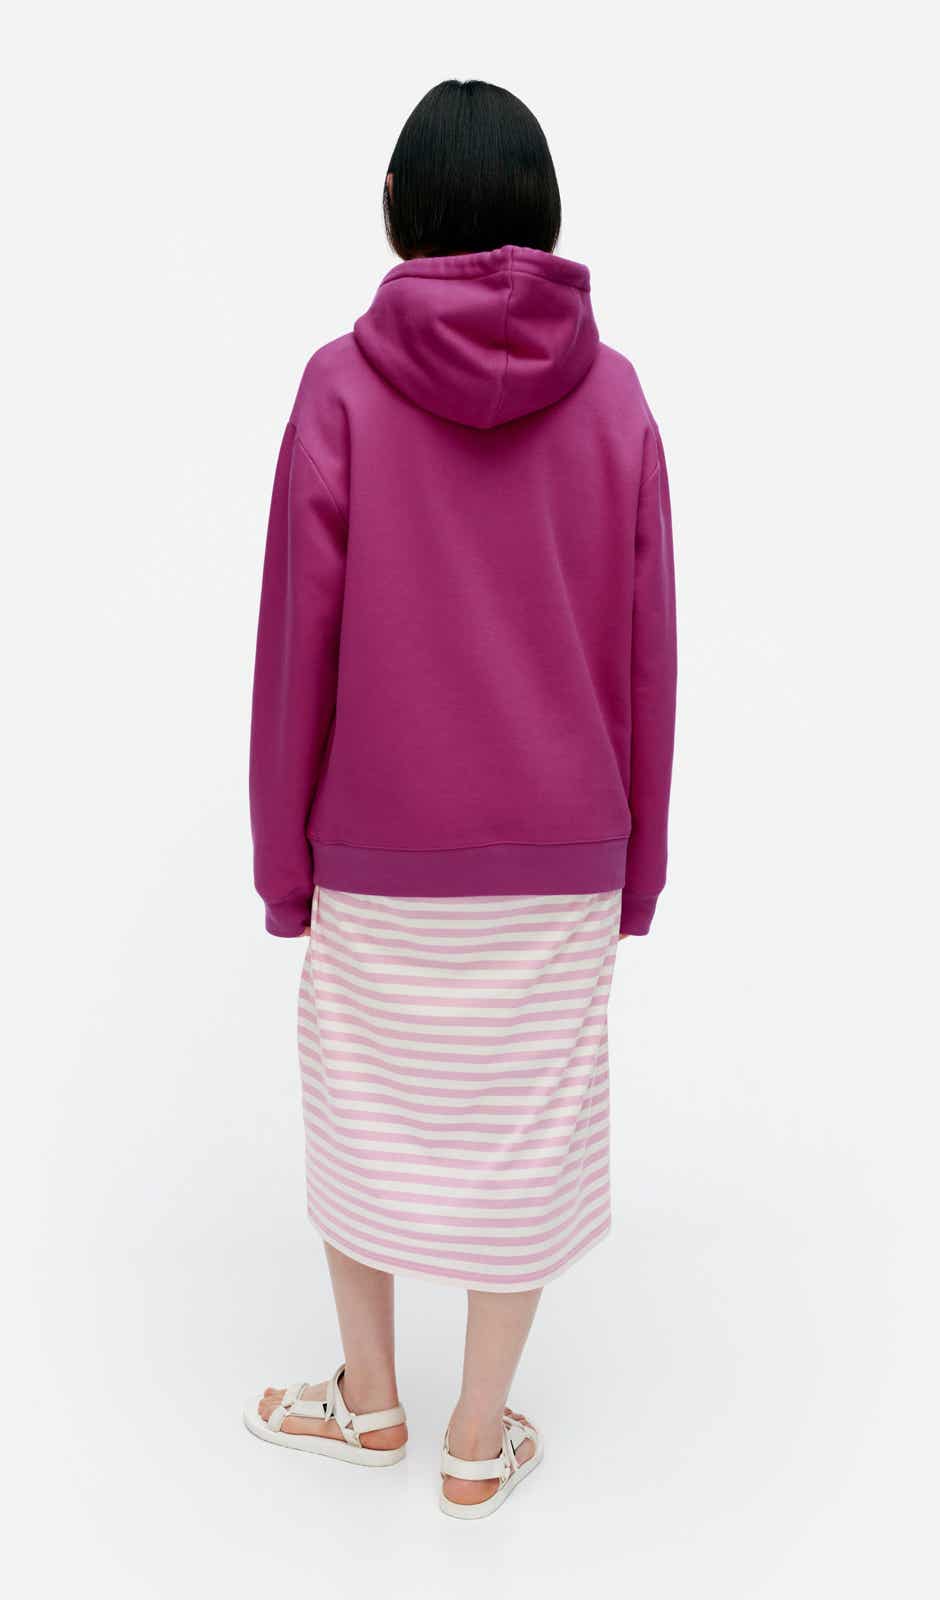 Kioski Runoja Unikko Placement hoodie – cotton French terry